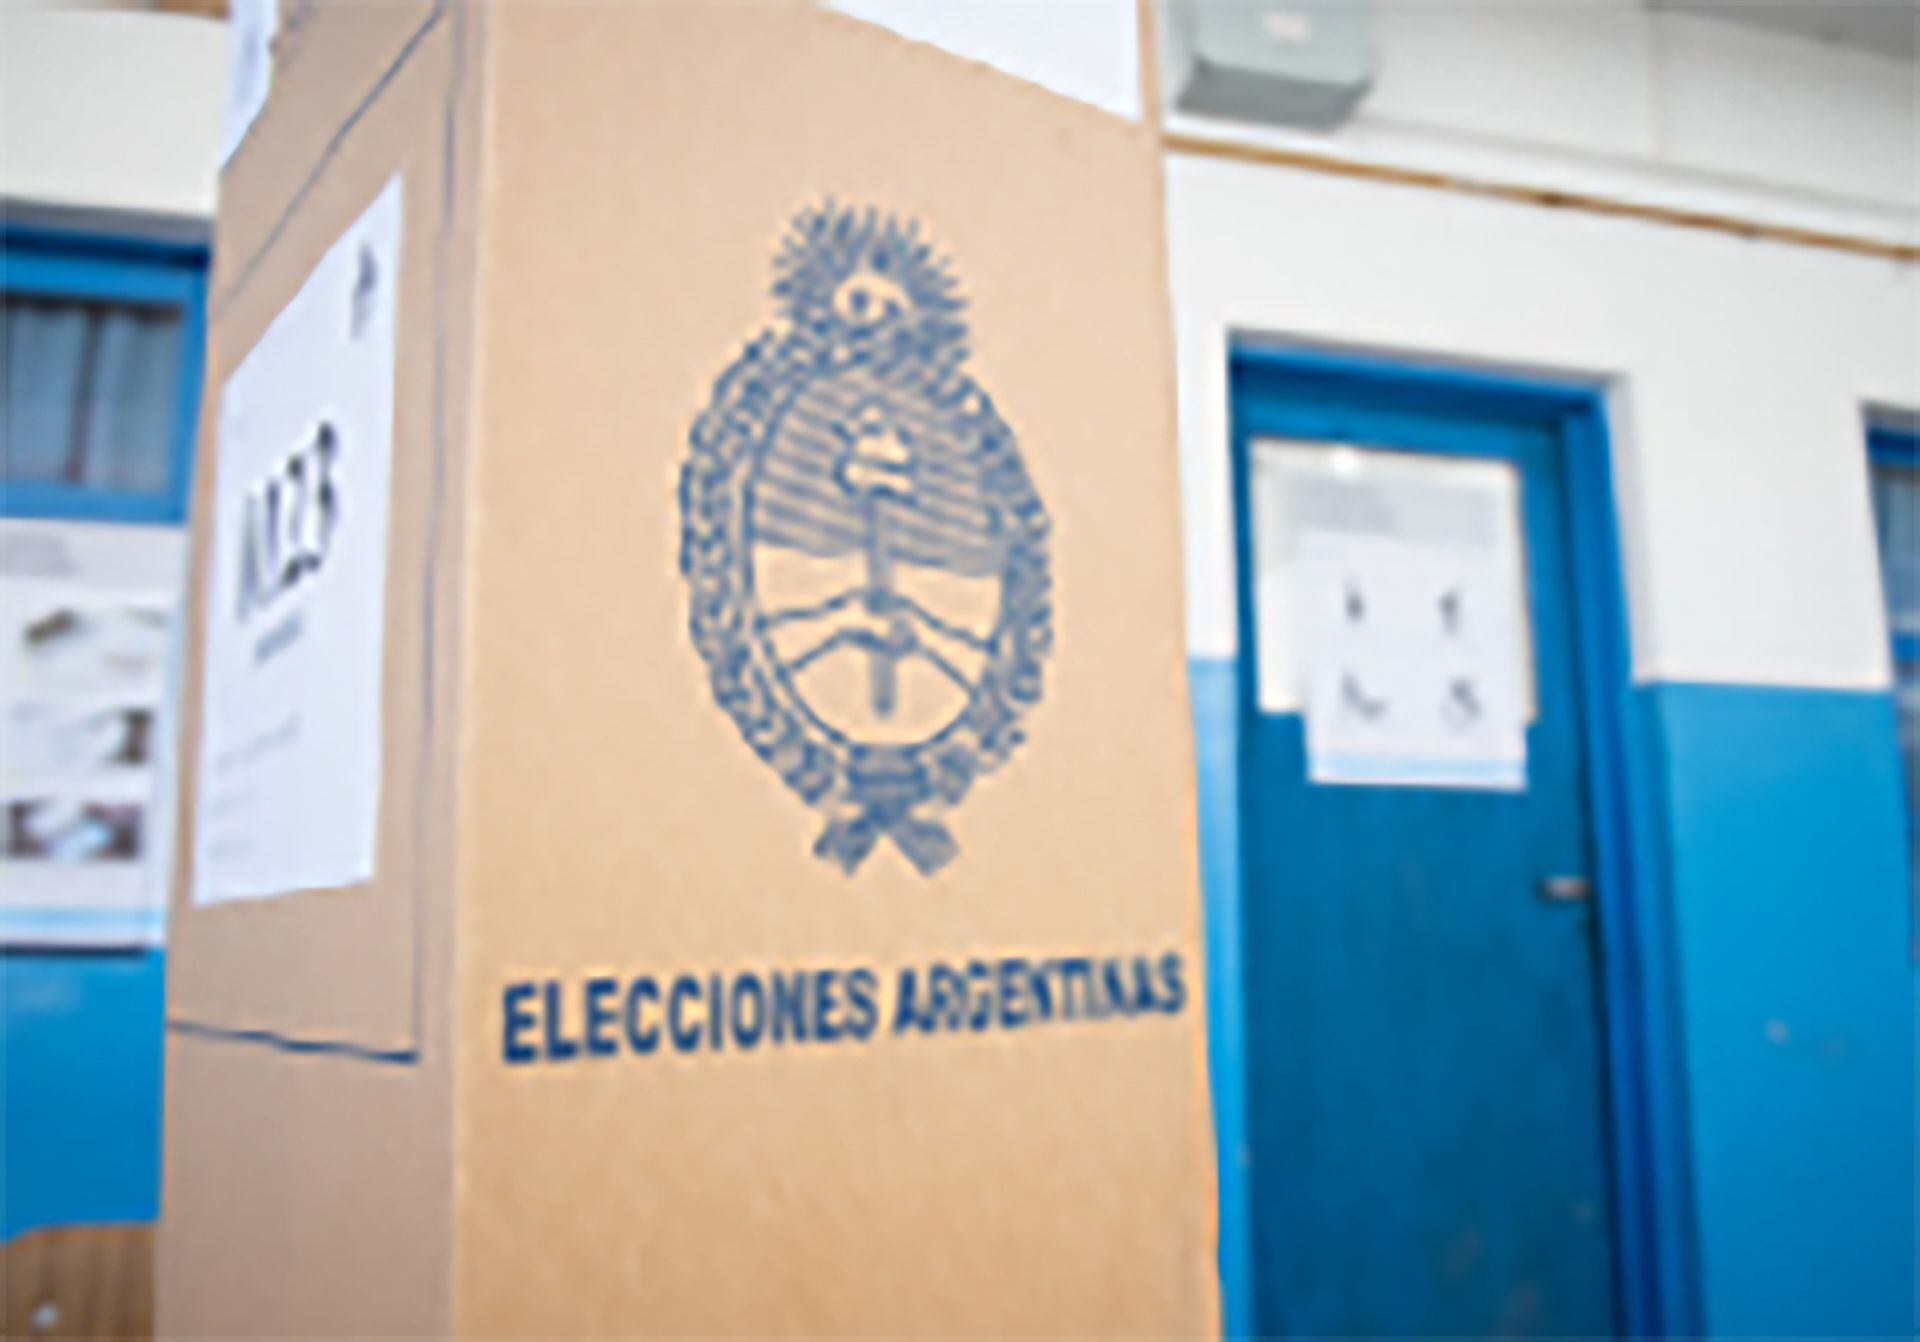 Las elecciones que se realizarán en Bariloche el domingo 3 de septiembre serán para elegir un intendente municipal